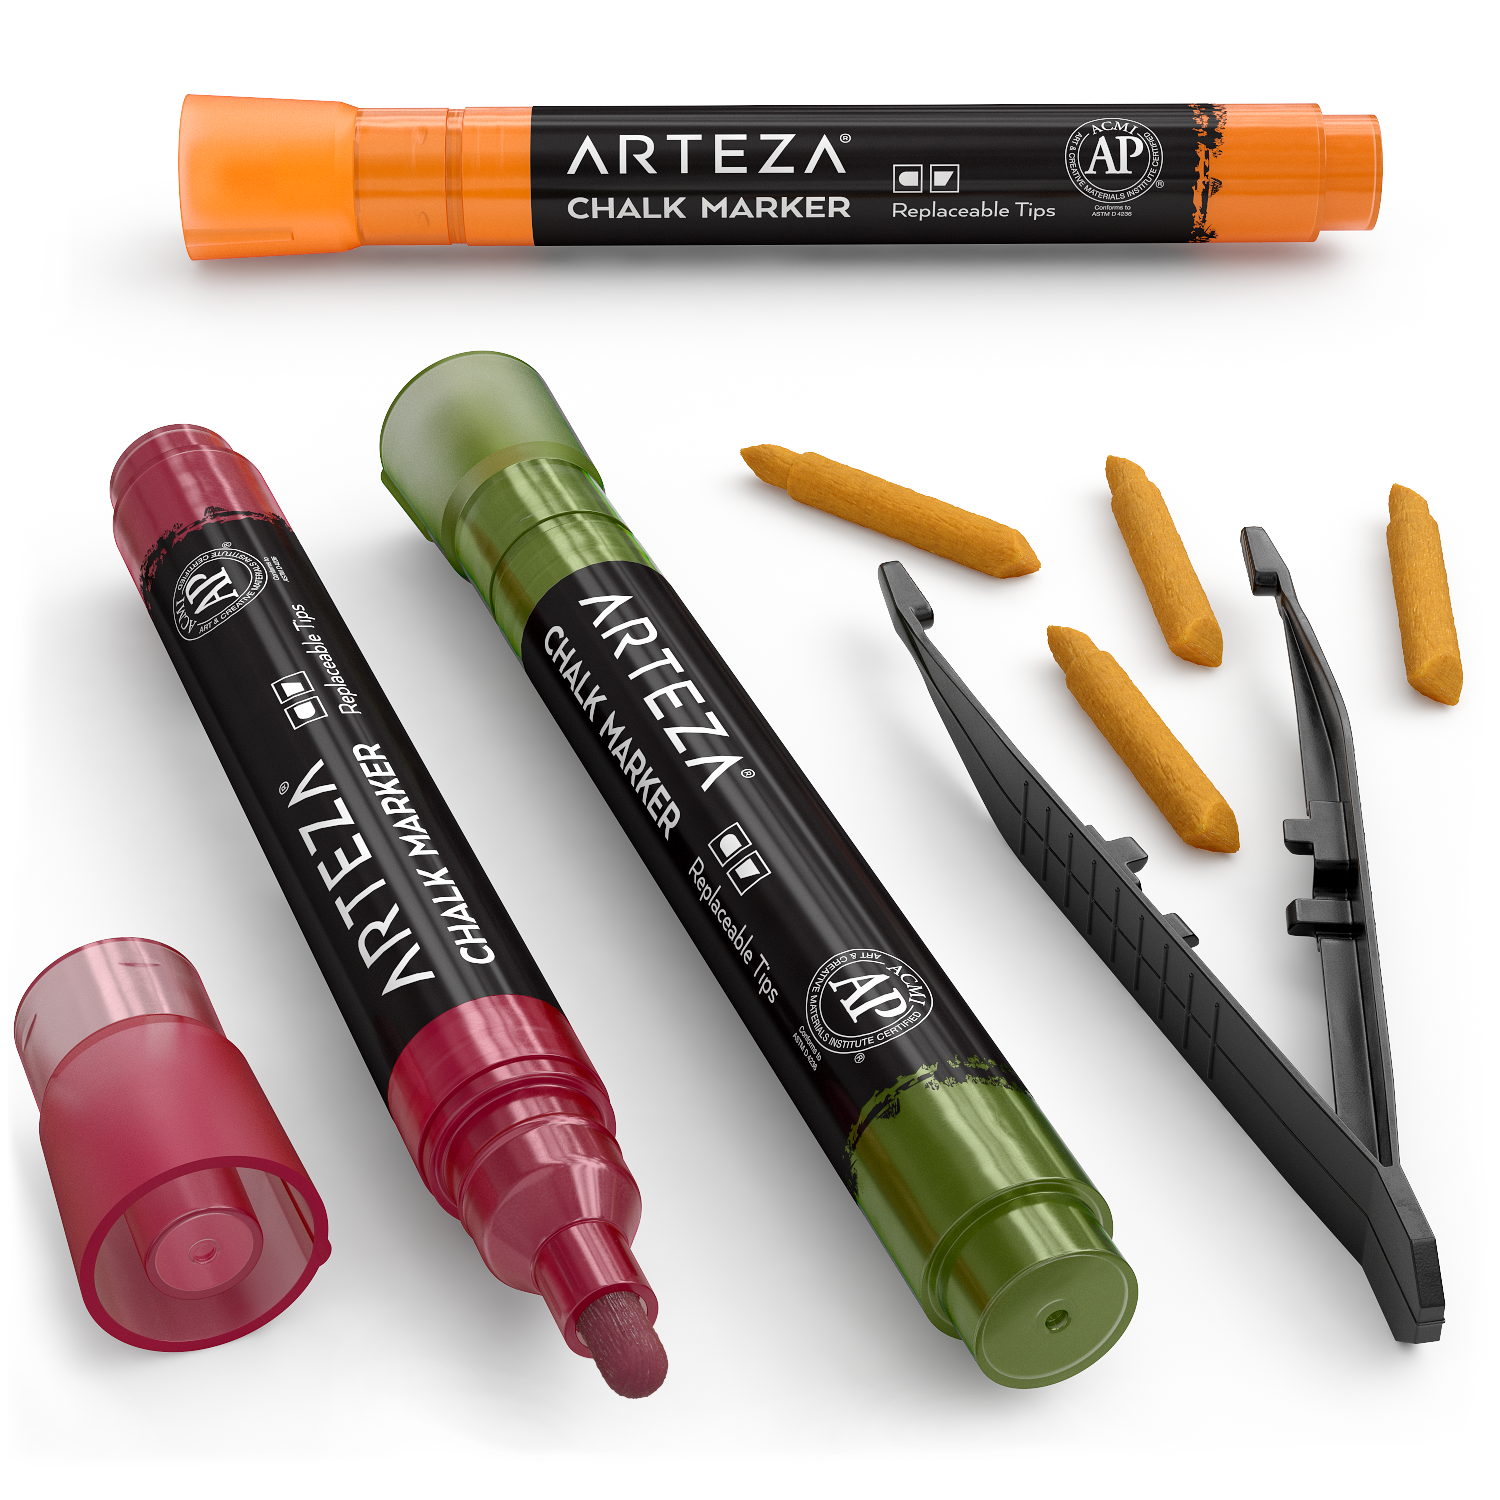 https://arteza.com/cdn/shop/products/liquid-chalk-markers-set-of-16-pastel-colors_H15PVPwl.png?v=1652889831&width=1946